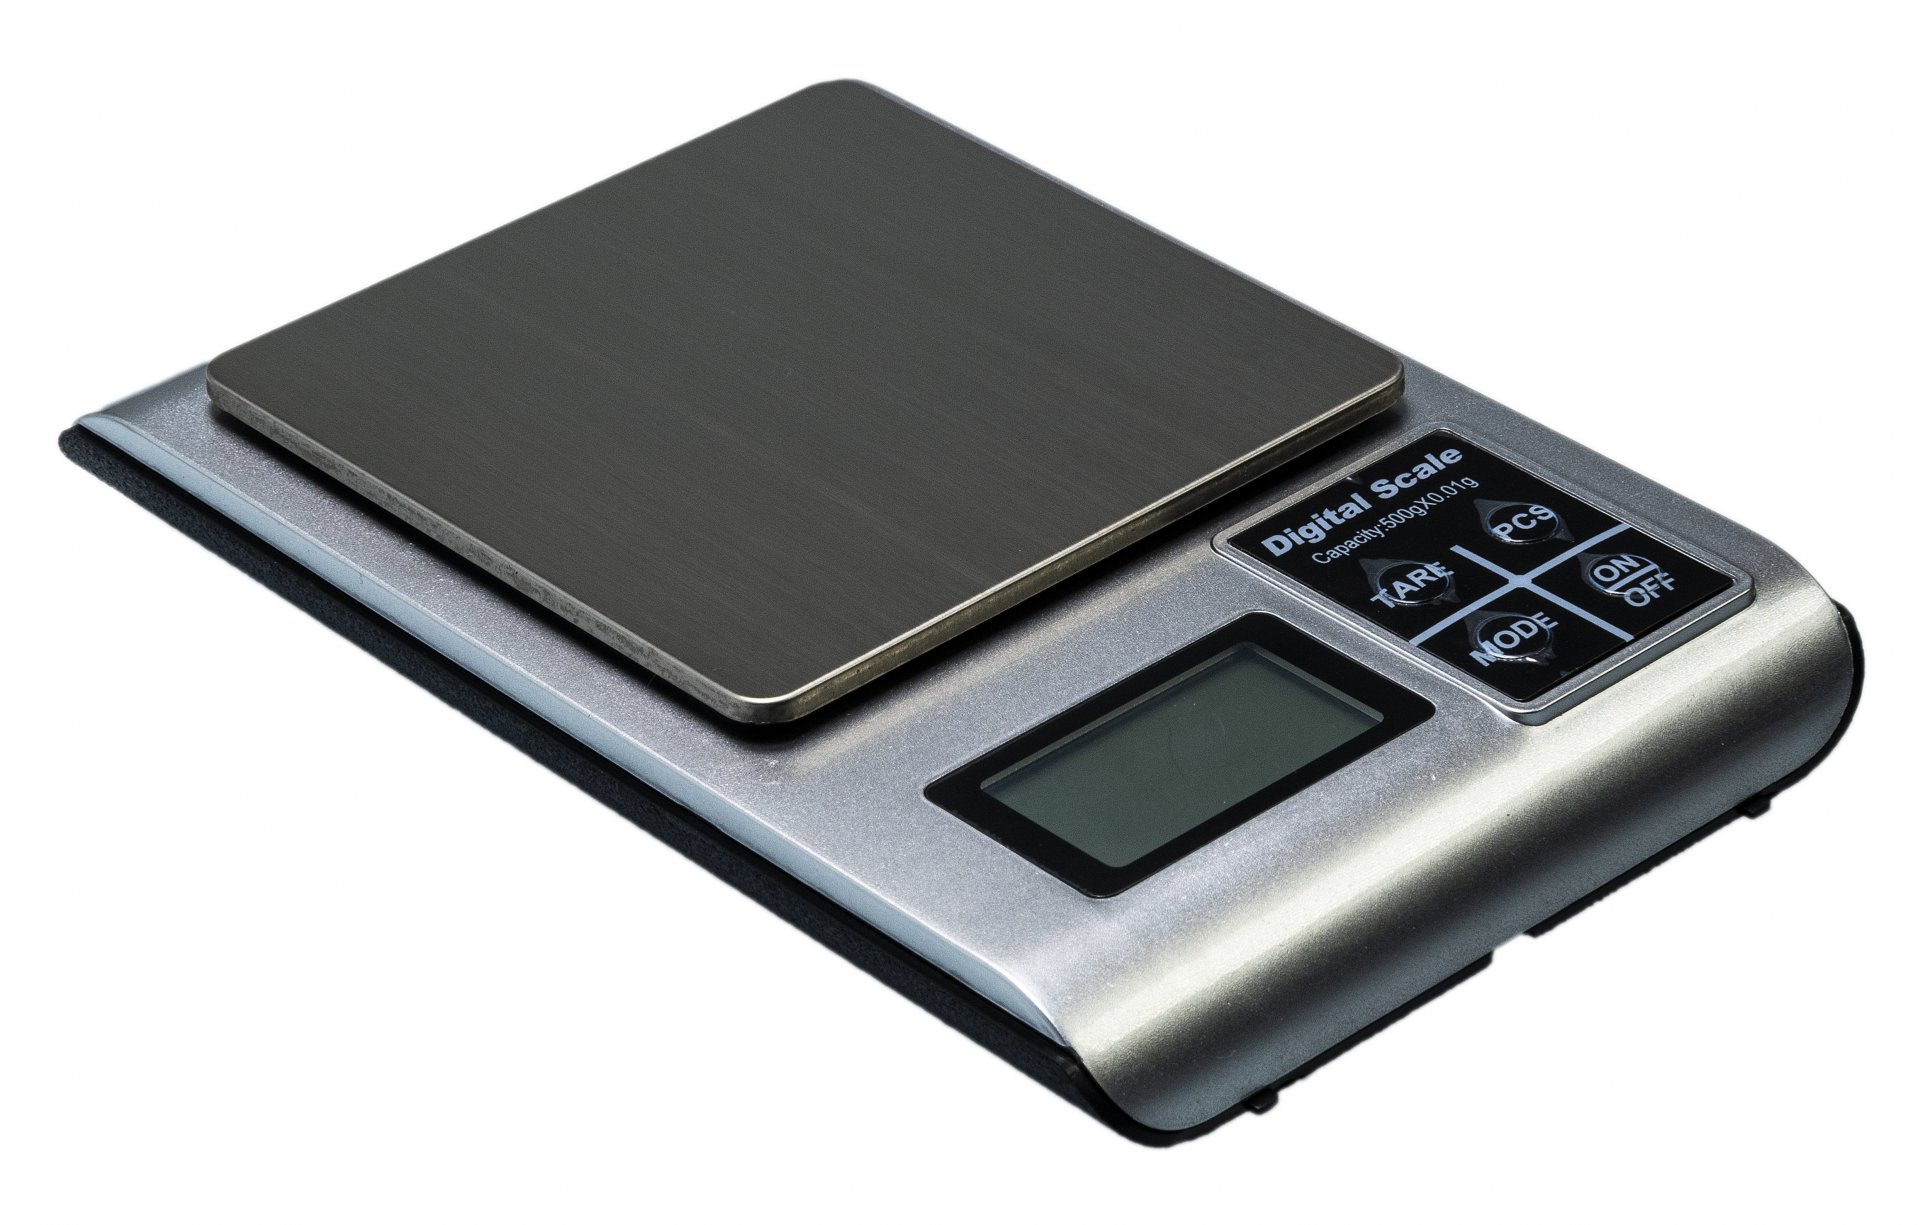 Купить весы маленькие в граммах. Весы электронные (0,1-500гр.) Ml-a05. Весы 500 гр 0.01 весы аортвтмынфк. Весы (0 ~ 220 г) точность 0,1 мг ba2204n, BIOBASE. Весы bw500 ювелирные.